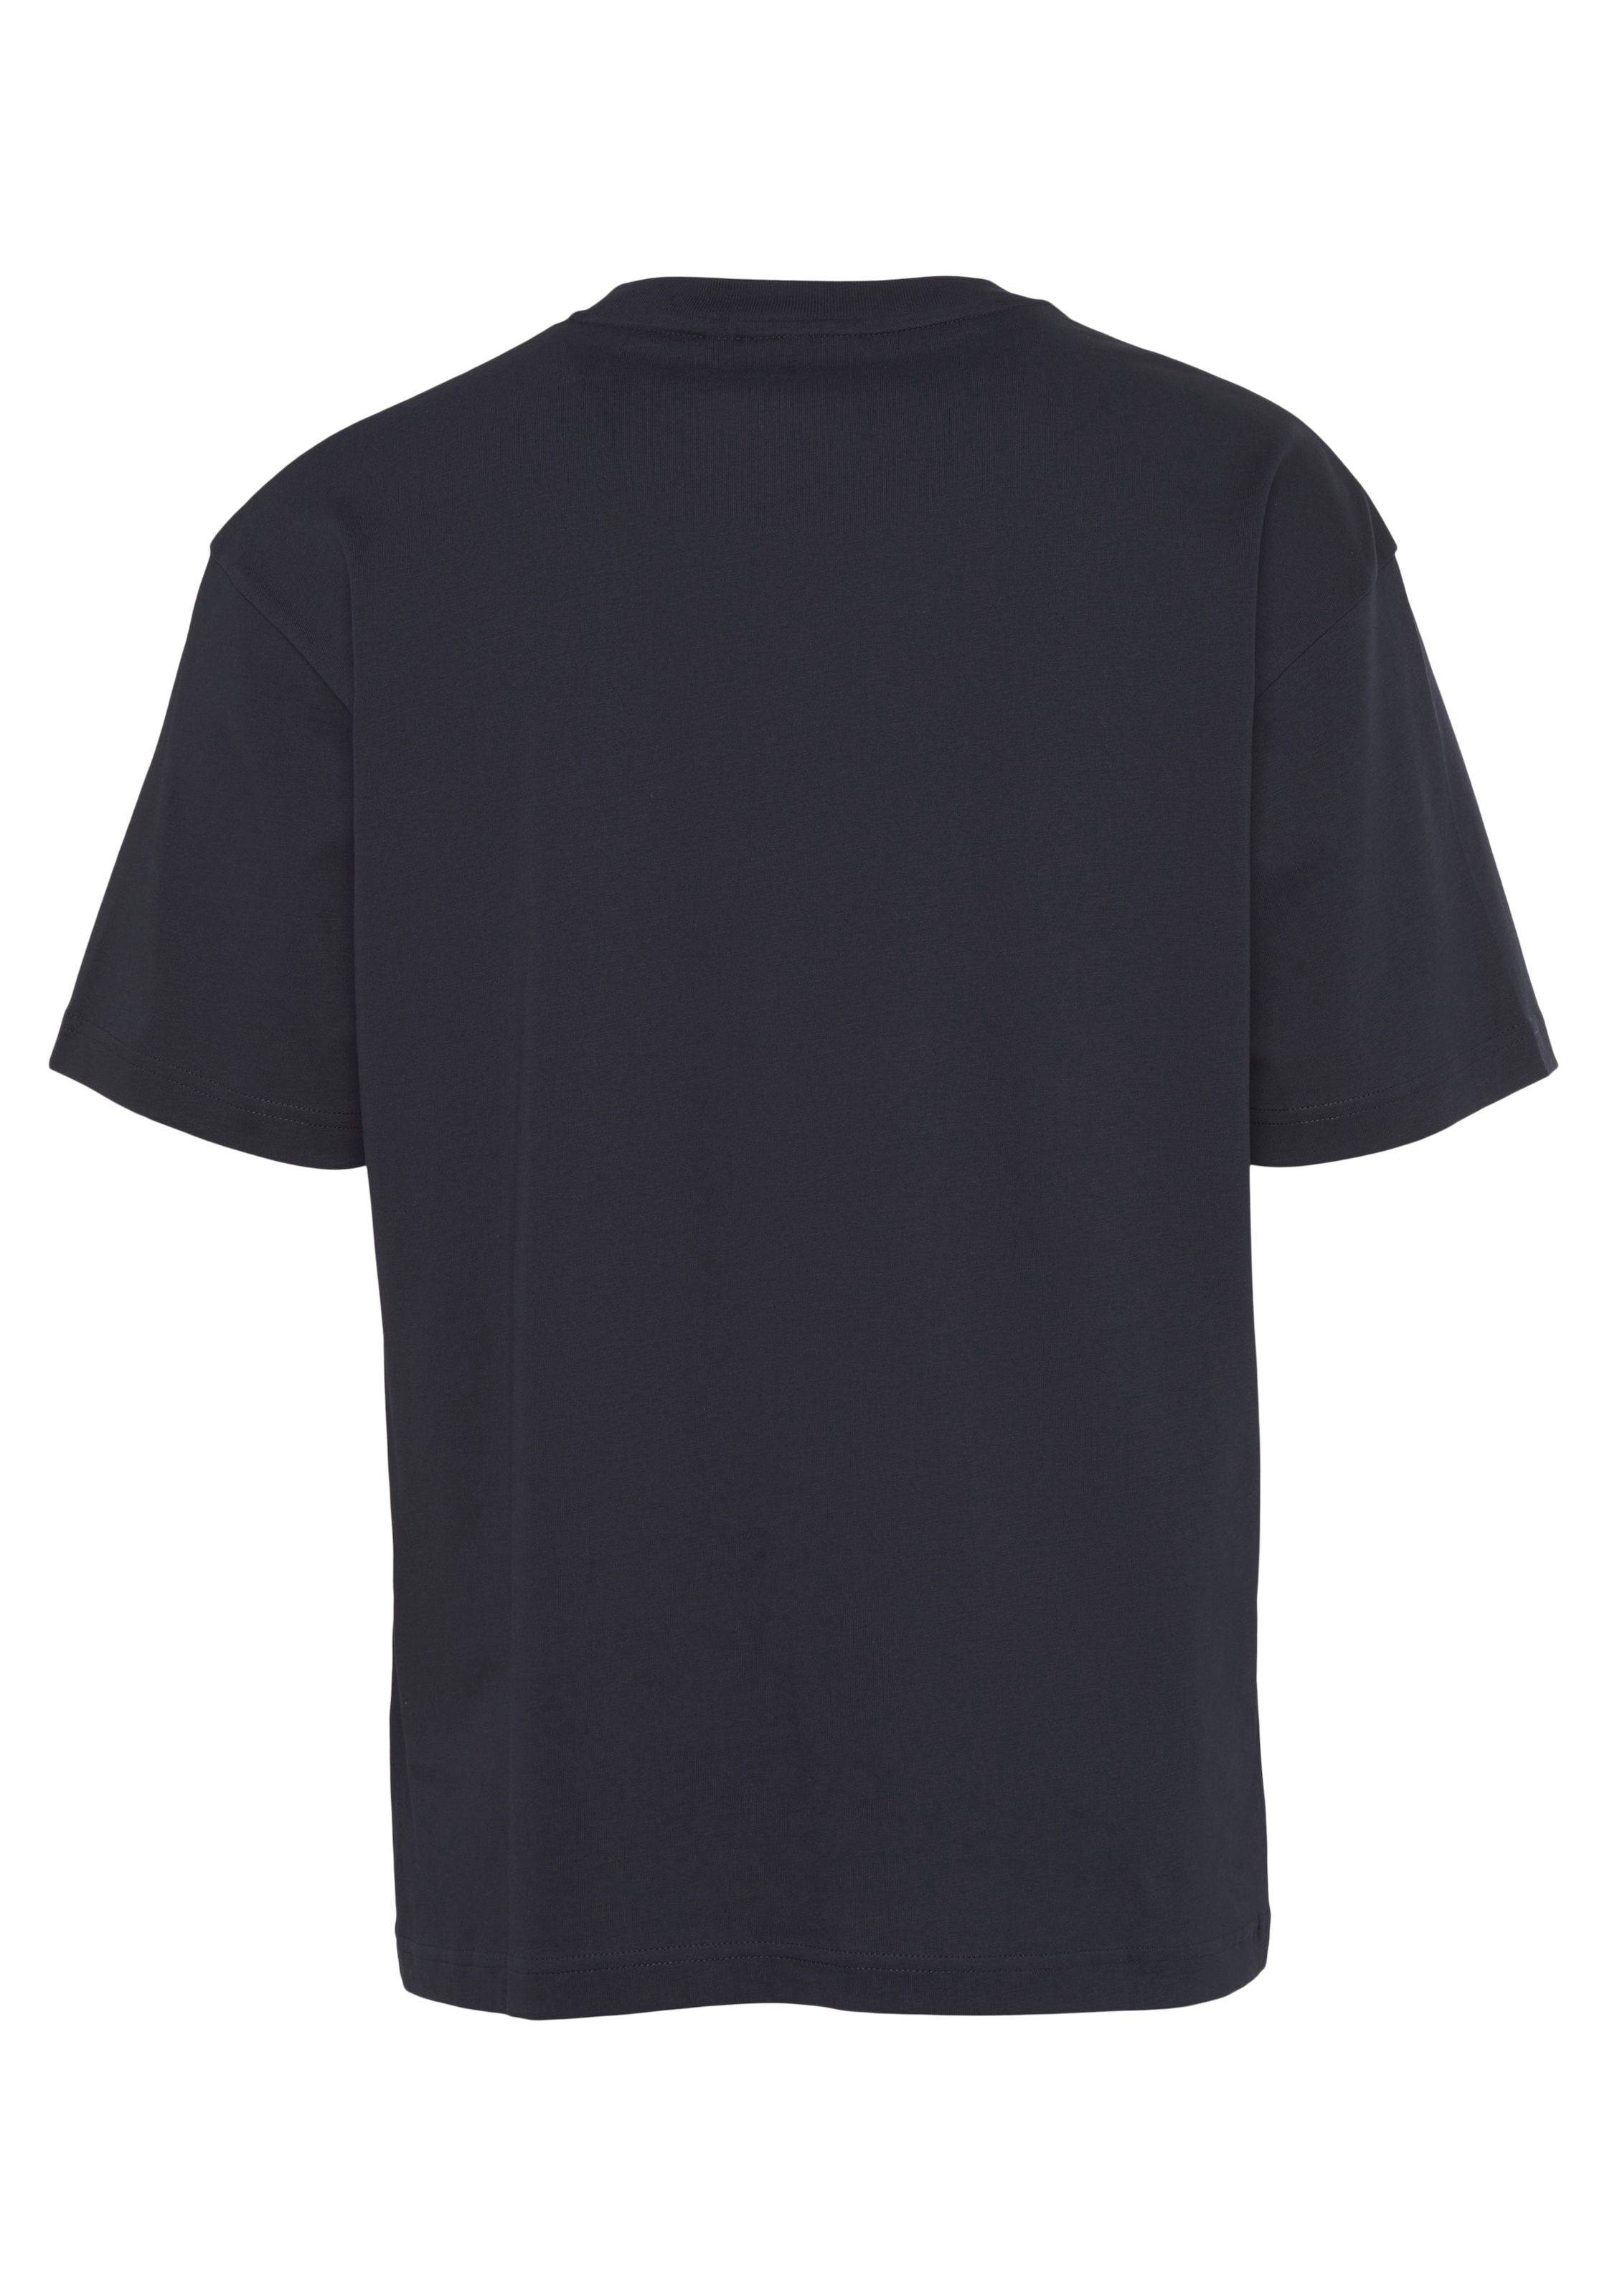 Calvin Klein T-Shirt »HERO LOGO COMFORT T-SHIRT«, mit aufgedrucktem  Markenlabel online kaufen bei OTTO | T-Shirts